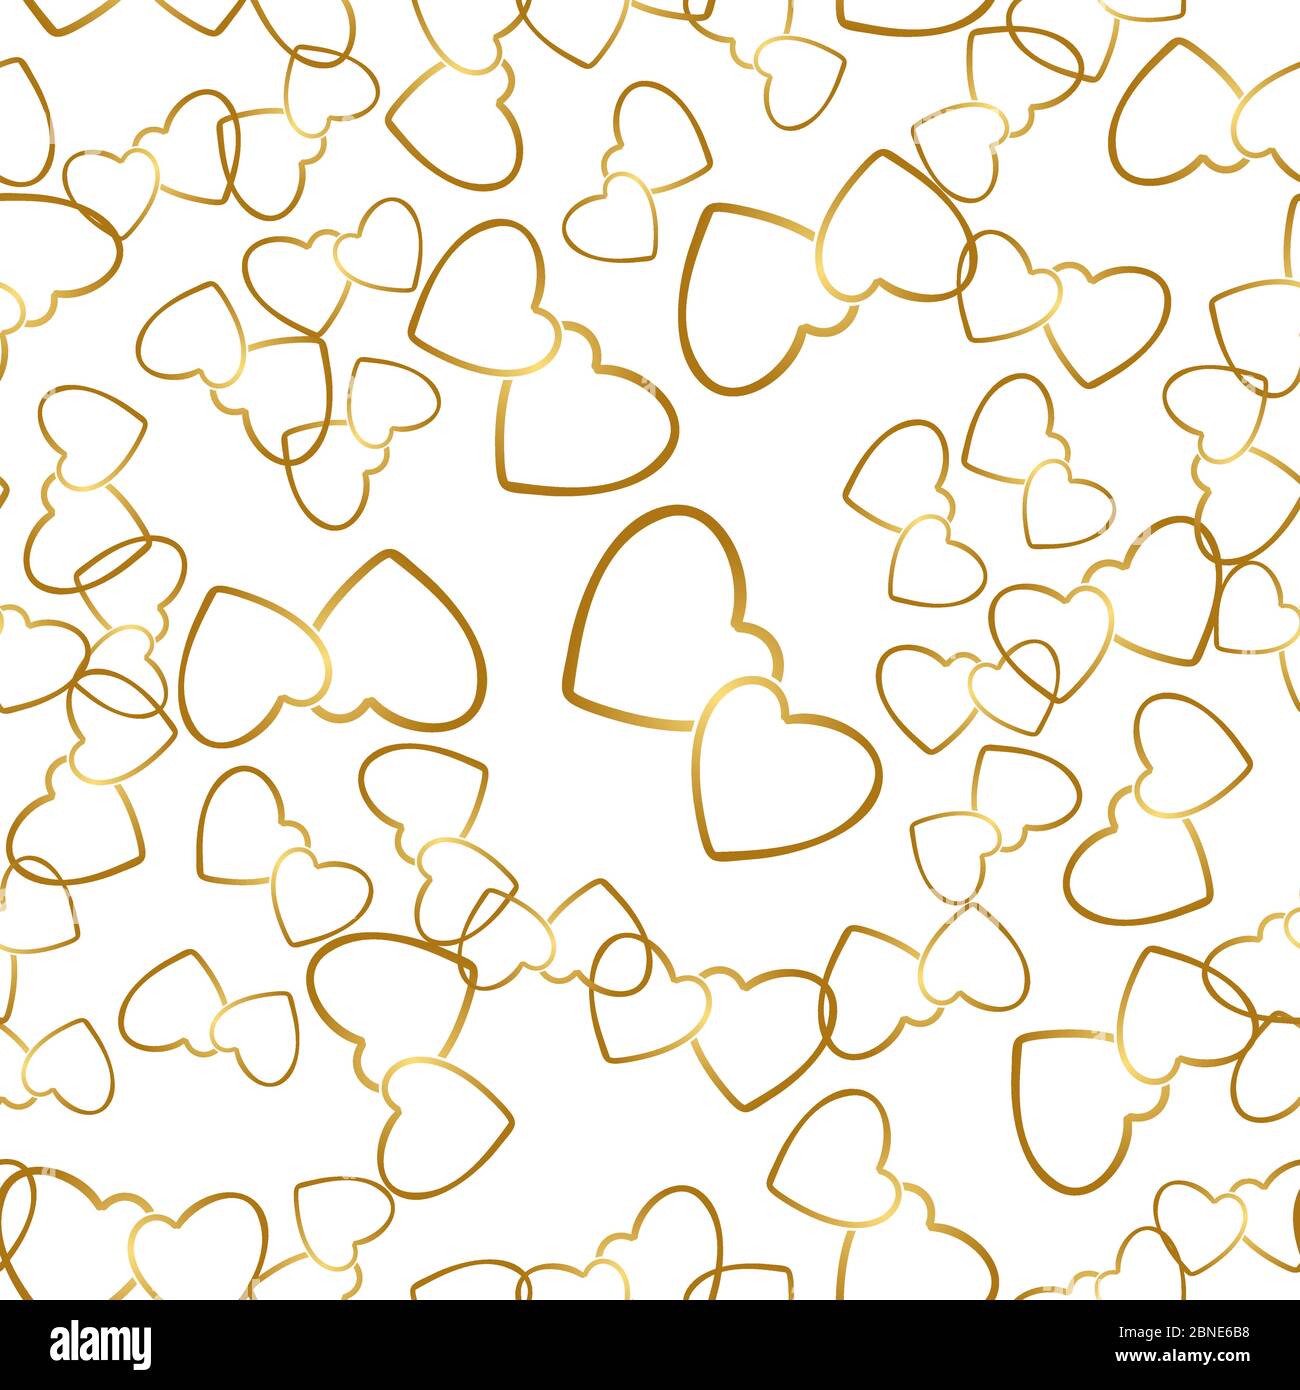 Zwei Herzen nahtloses Muster. Goldene Herzpaare, die zufällig auf weißem Hintergrund platziert werden. Romantische Verpackung Textur für Valentinstag Geschenk oder gr Stock Vektor